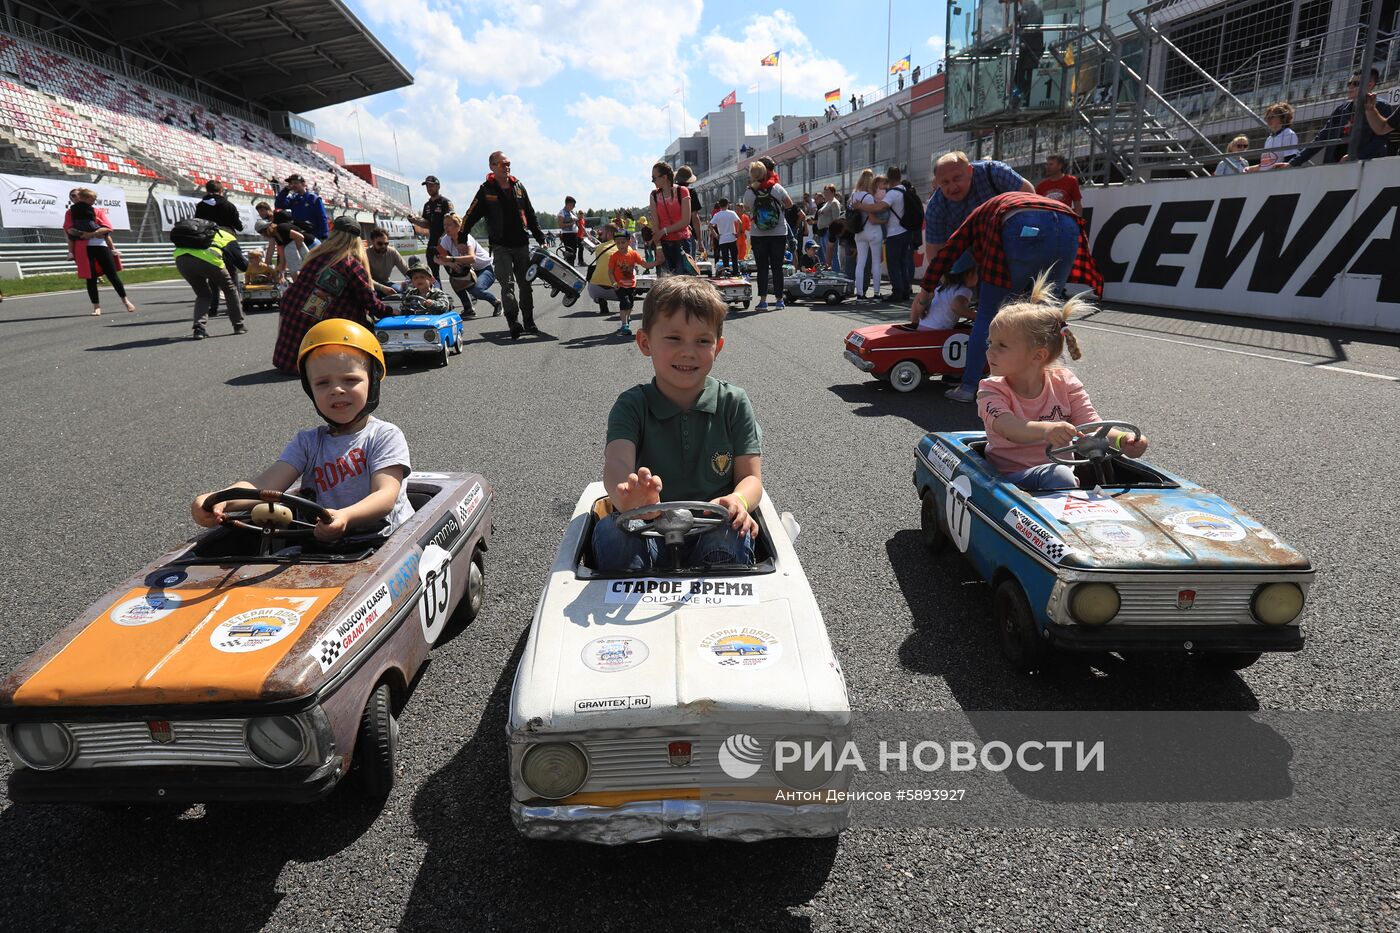 VII автомобильный фестиваль Moscow Classic